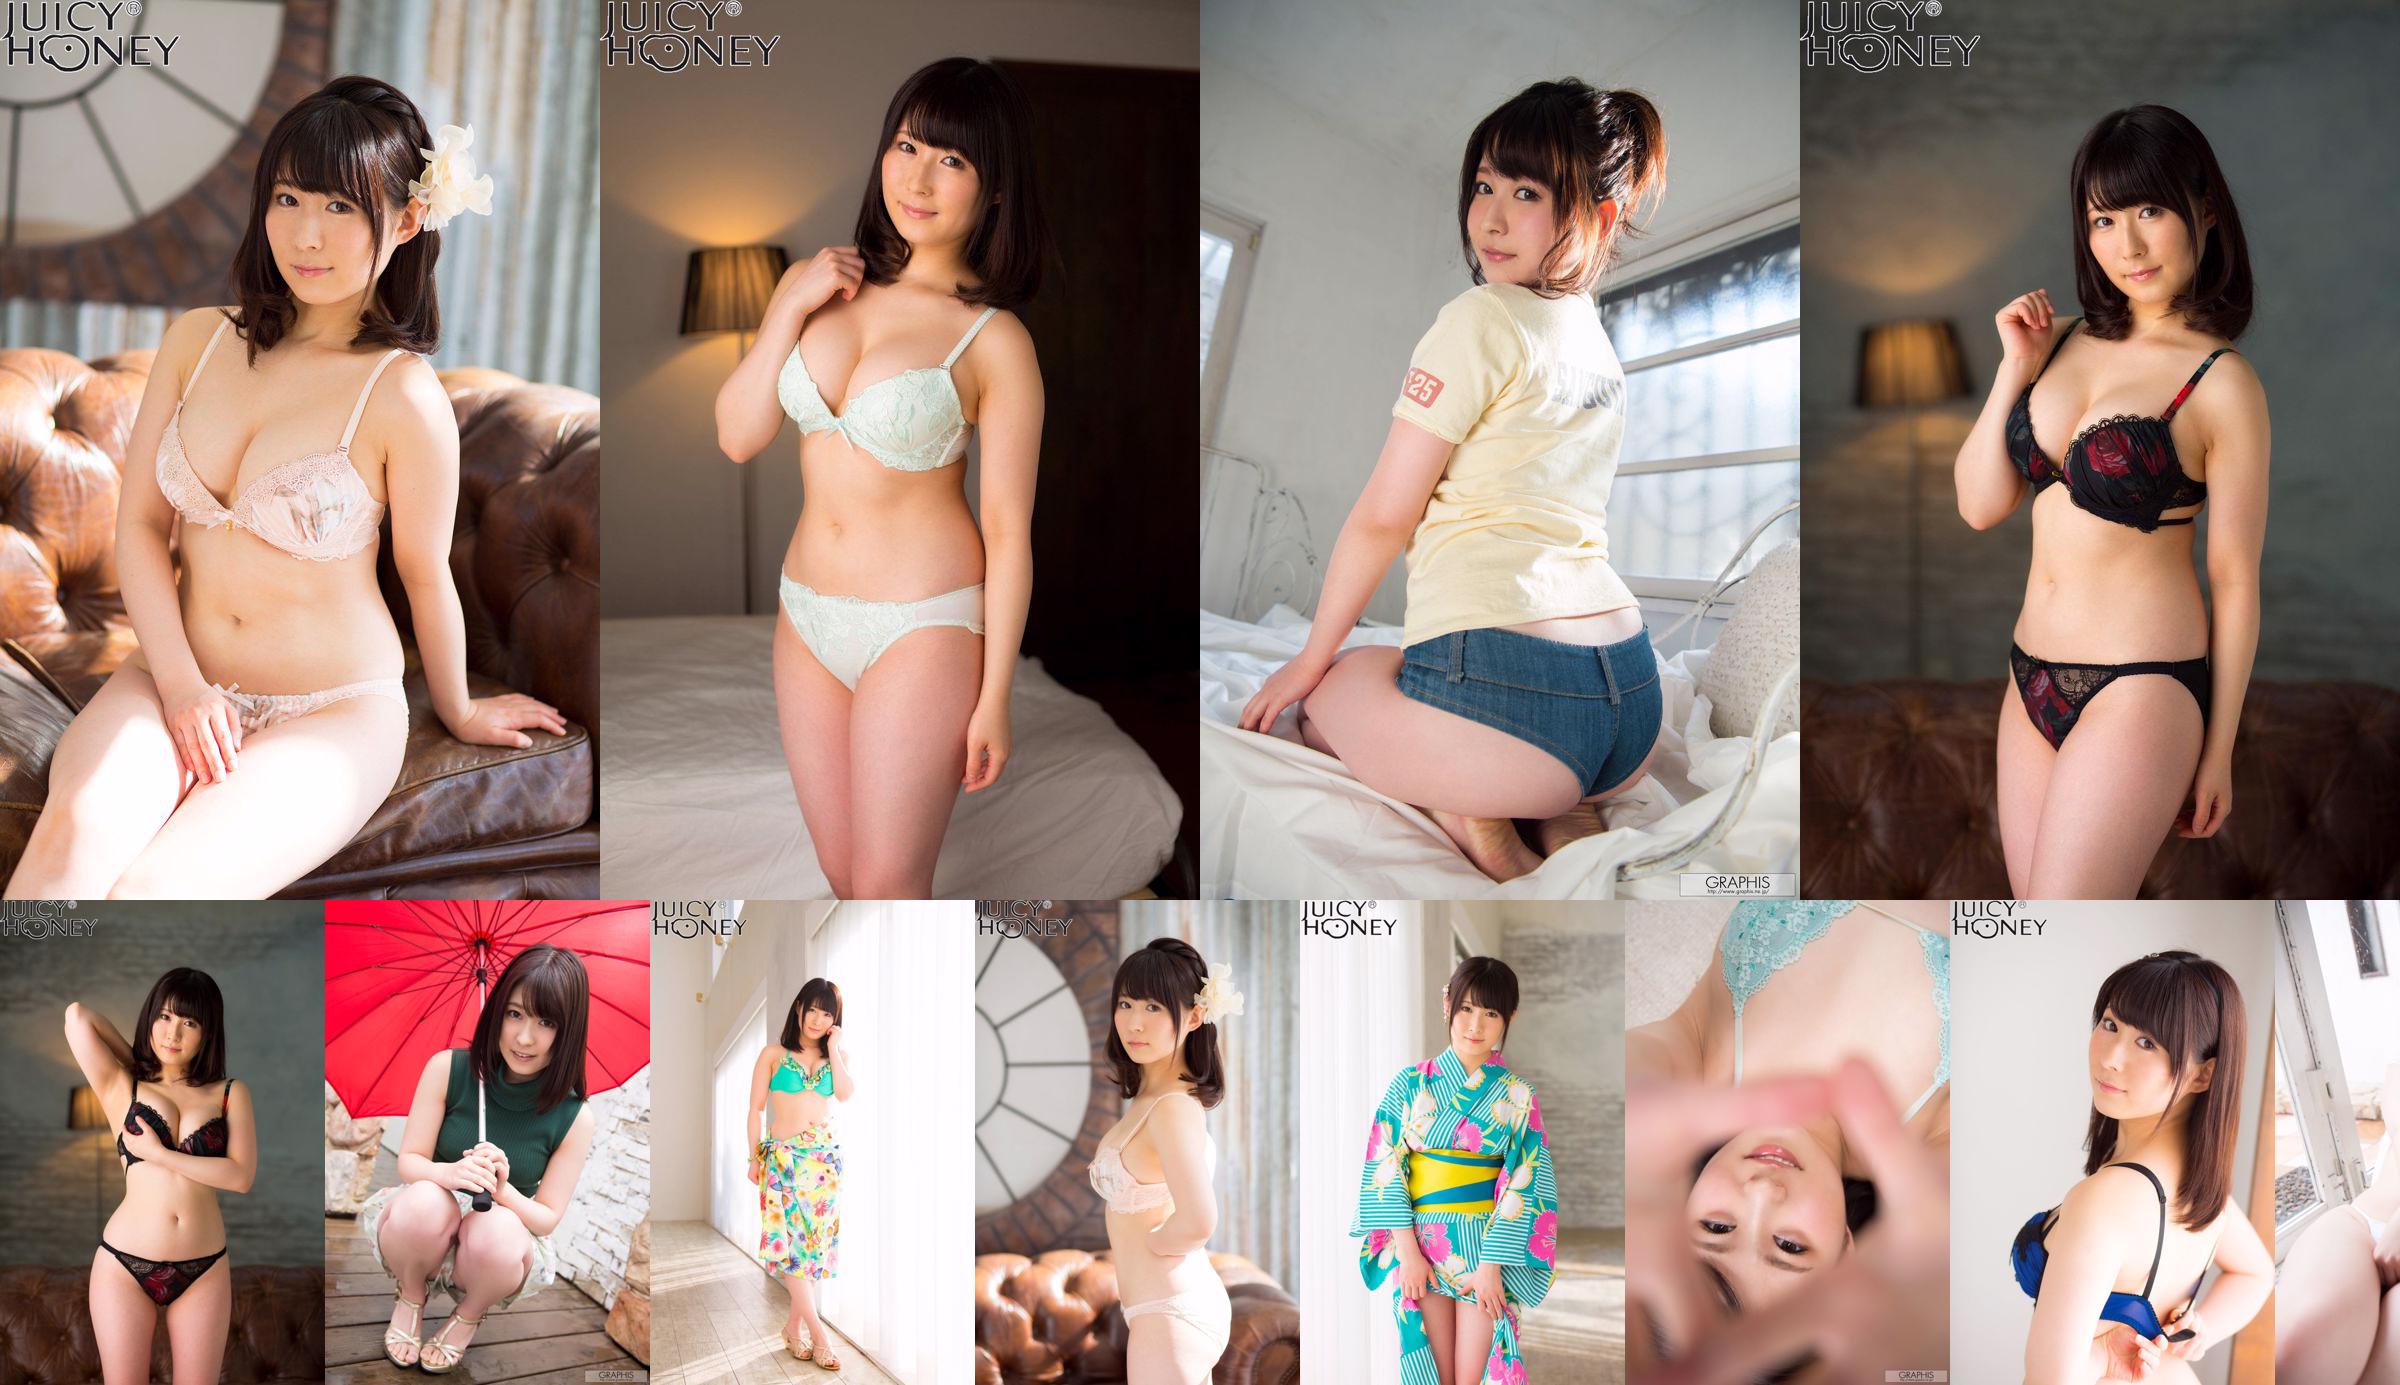 Asuka り ん / Asuka bell "Sunny Place" [Graphis] Chicas No.66ddb8 Página 1